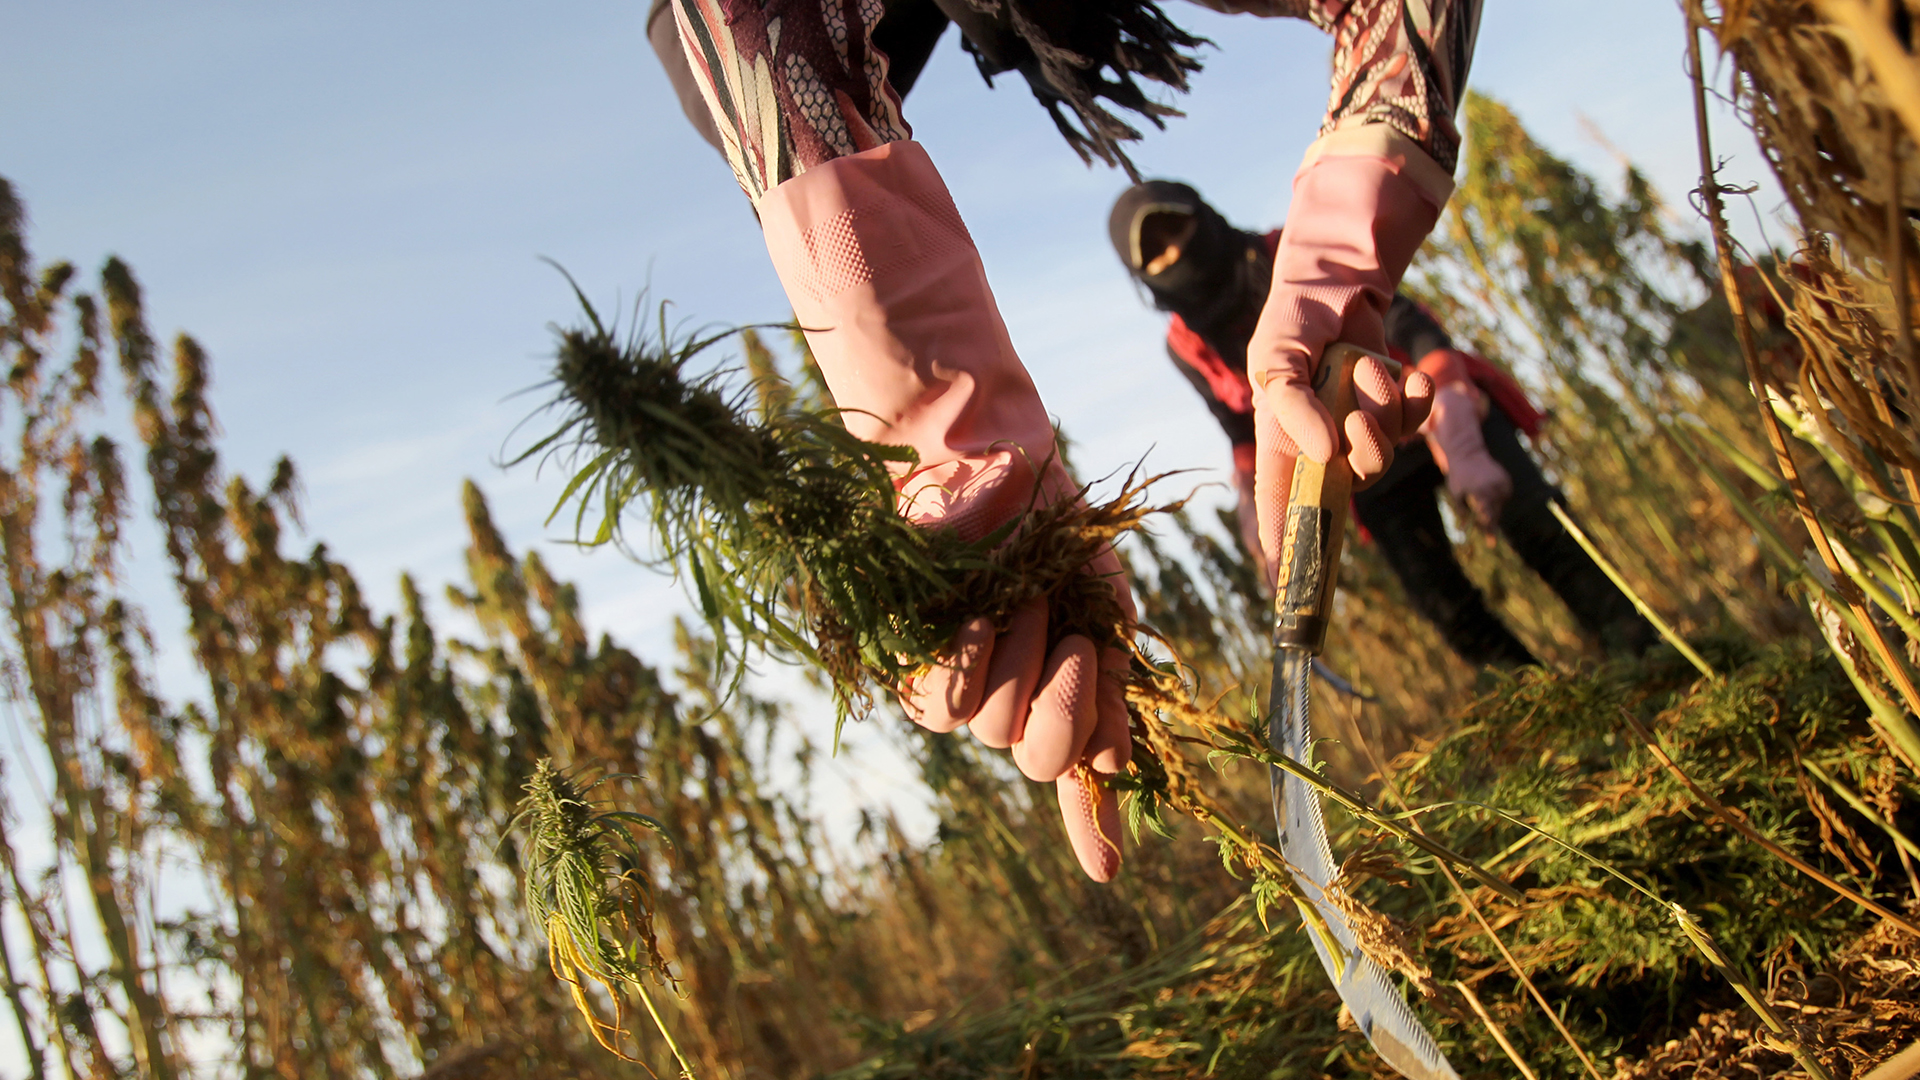 Syrische Flüchtlingsmädchen ernten auf einem Feld im Bekaa-Tal, Libanon Cannabispflanzen. (Archivbild: 07.10.2018) | picture alliance/dpa